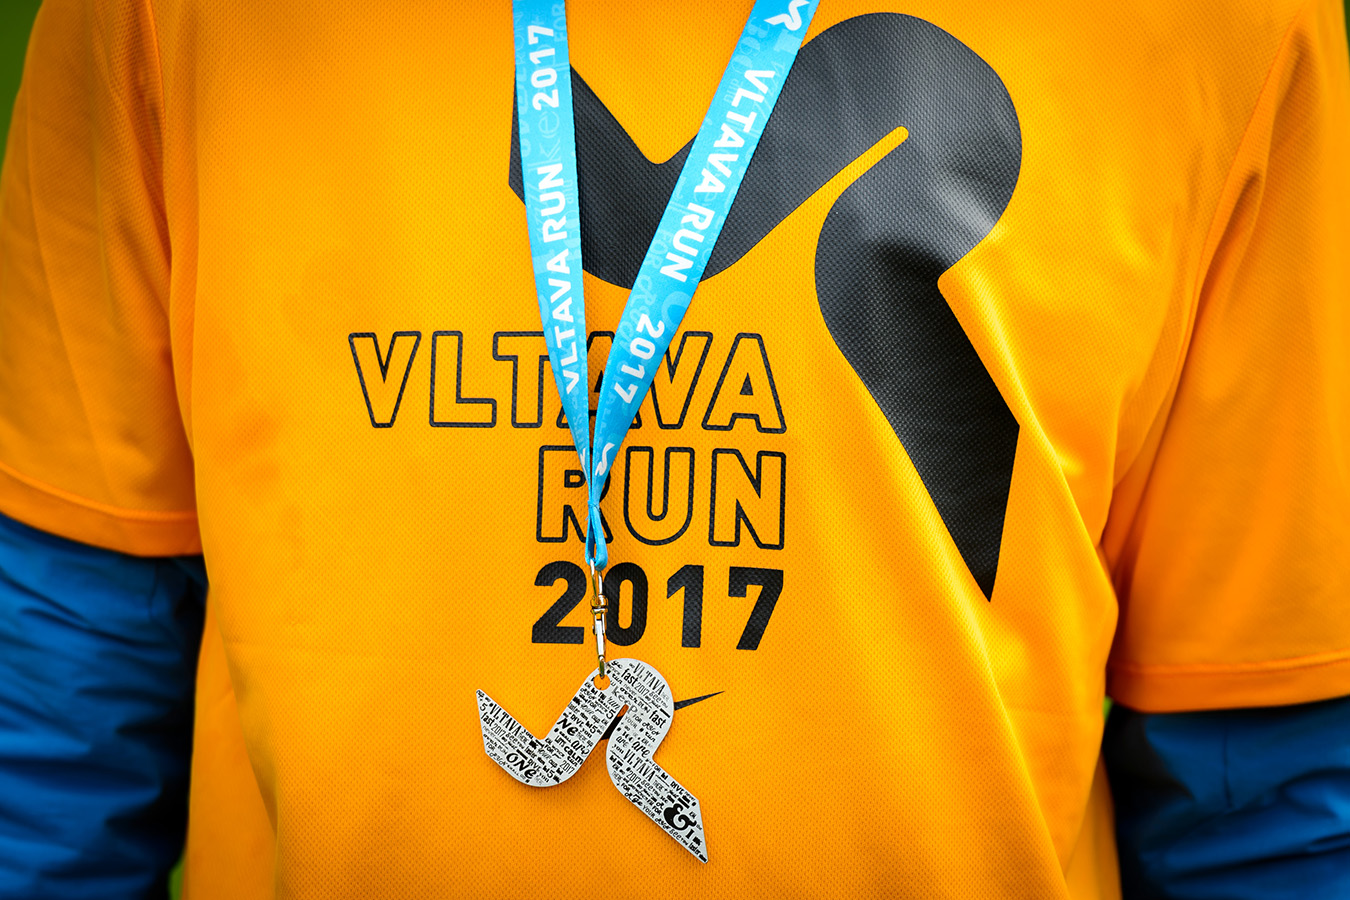 Vltava Run 2017: Víkend plný zážitků aneb běh, příroda a tým